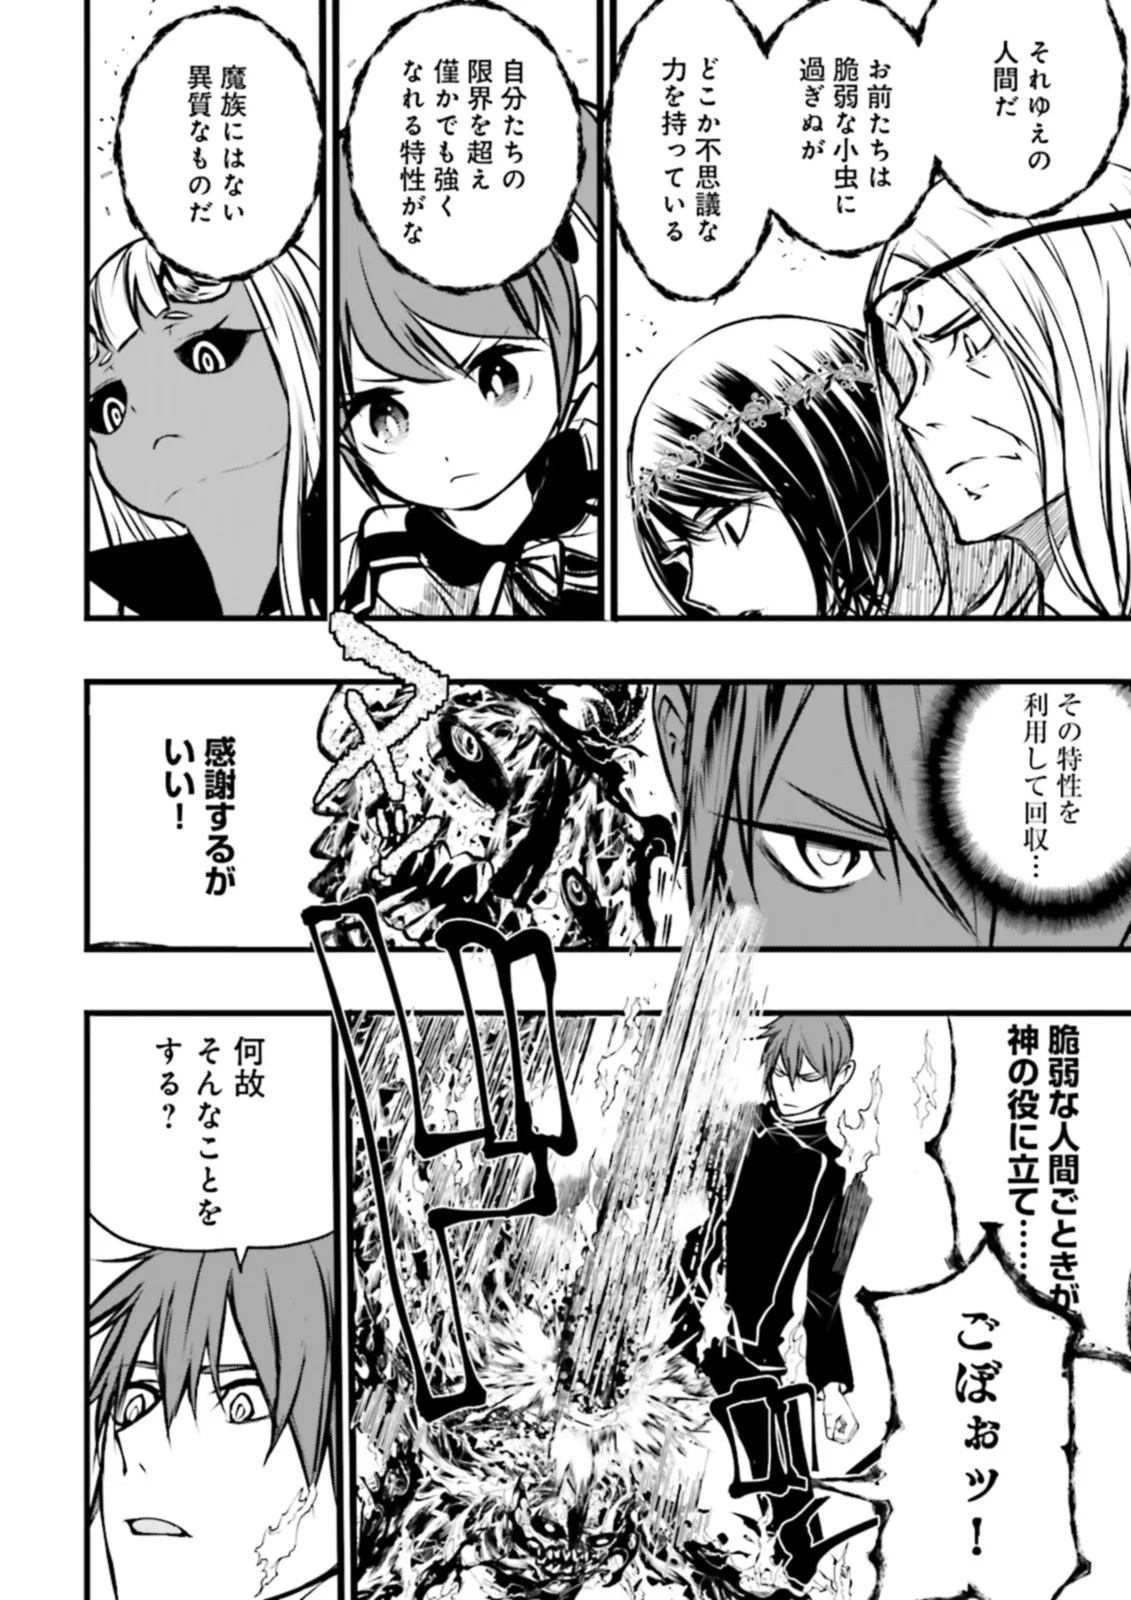 Sukiru Ga Nakereba Level wo Ageru ~ 99 Ga Kansuto No Sekai De Reberu 800 Man Kara Sutato ~ - Chapter 36.2 - Page 8